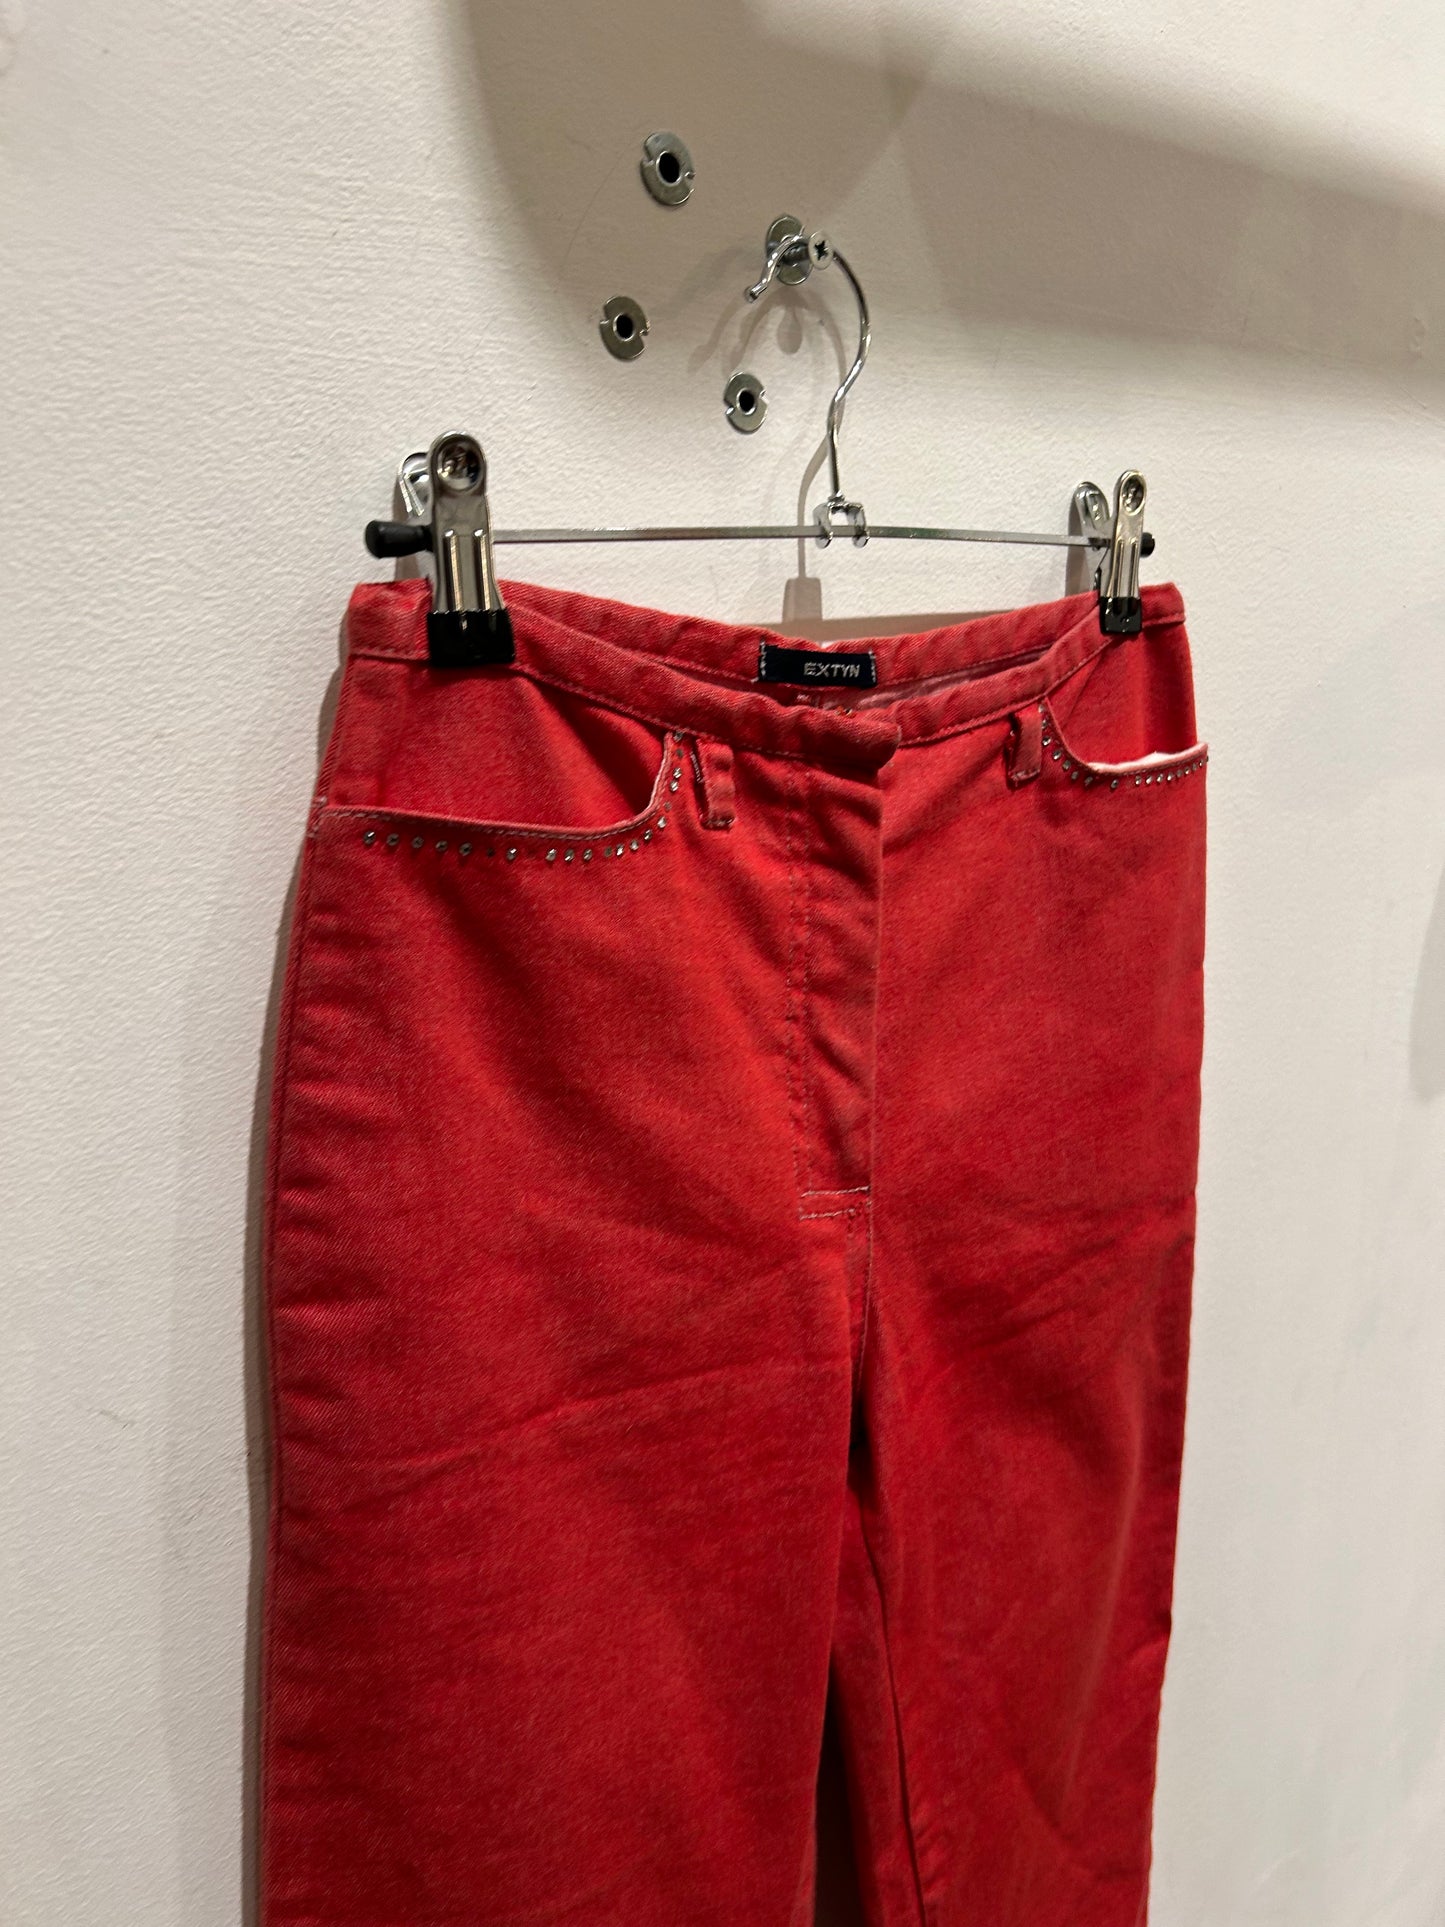 EXTYN red Y2K pants